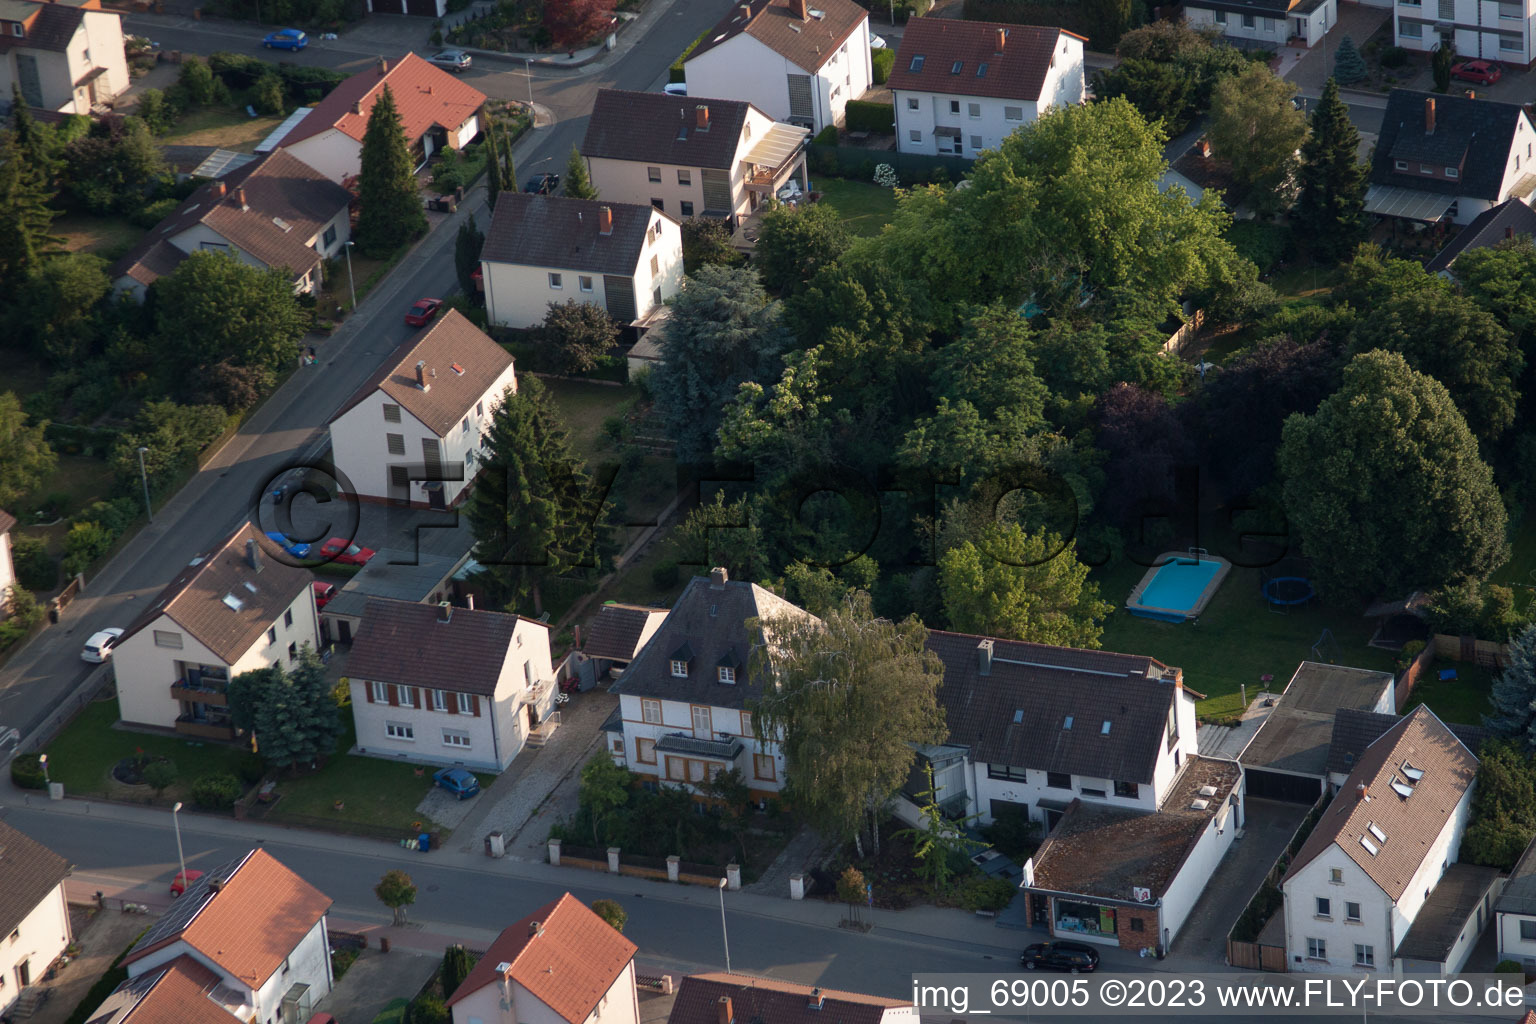 District Dannstadt in Dannstadt-Schauernheim in the state Rhineland-Palatinate, Germany seen from above